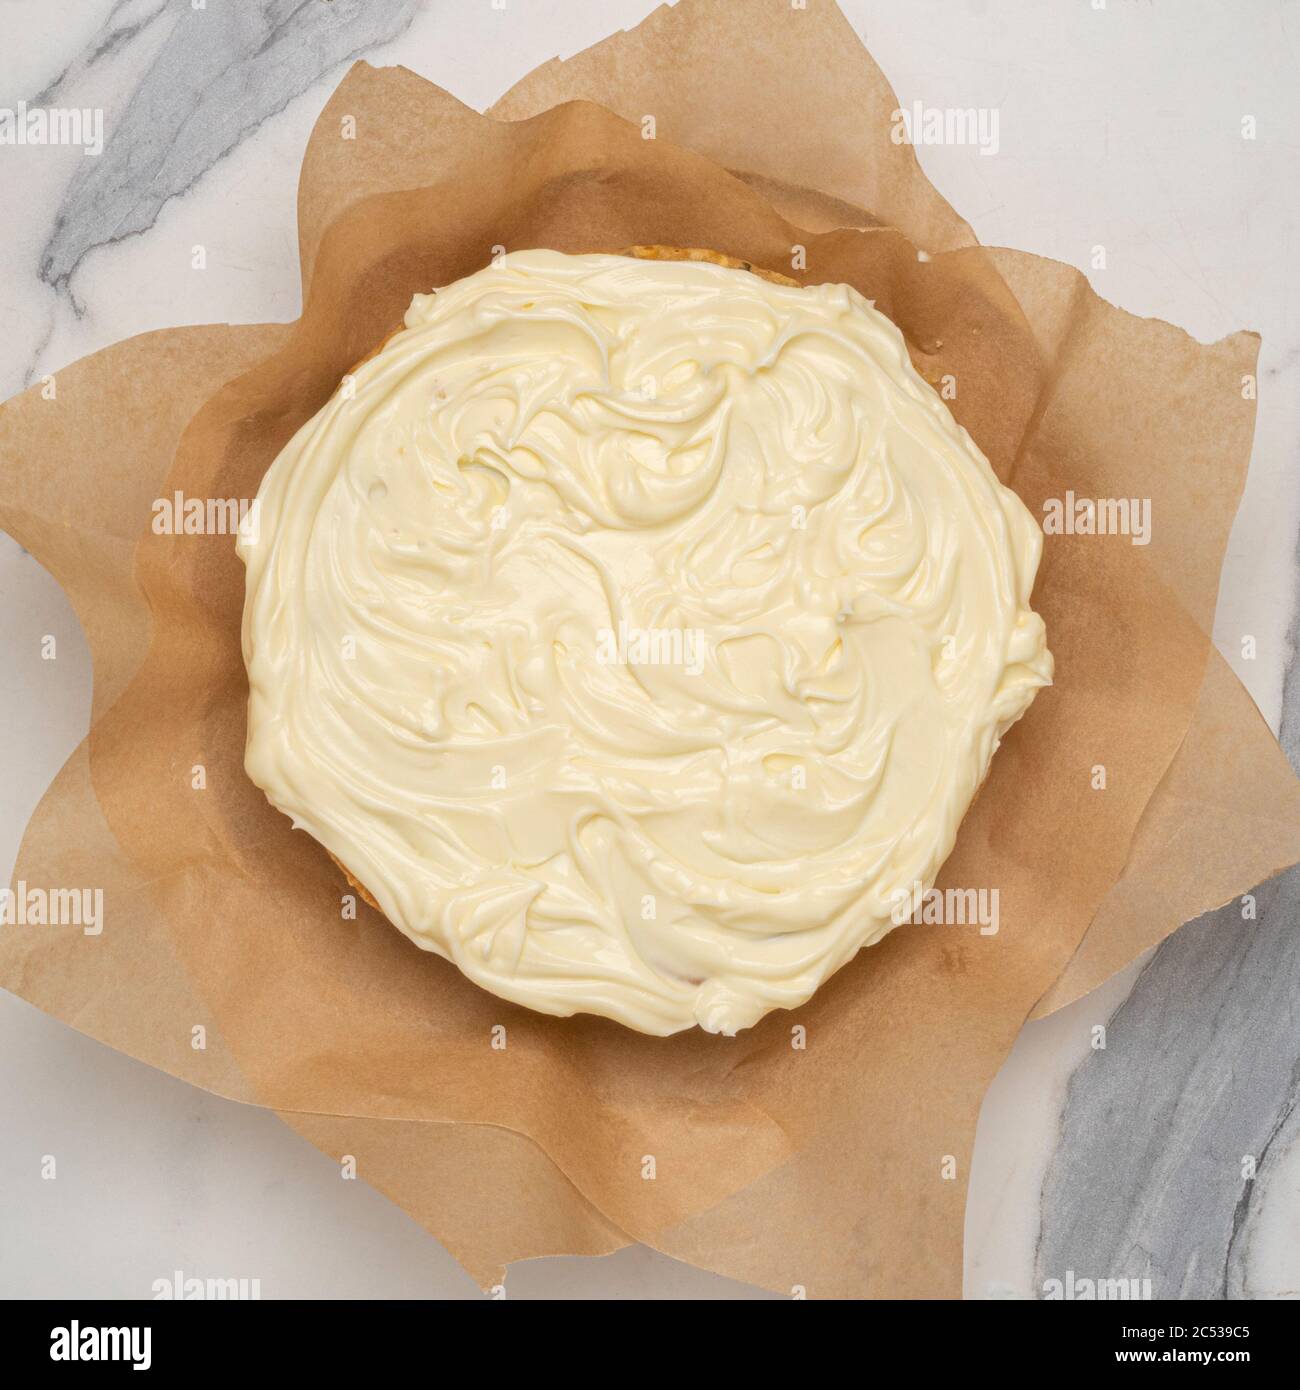 Plan de vue d'un gâteau maison de Parsnsip avec glaçage au fromage à la crème, sur papier parchemin de cuisson. Banque D'Images